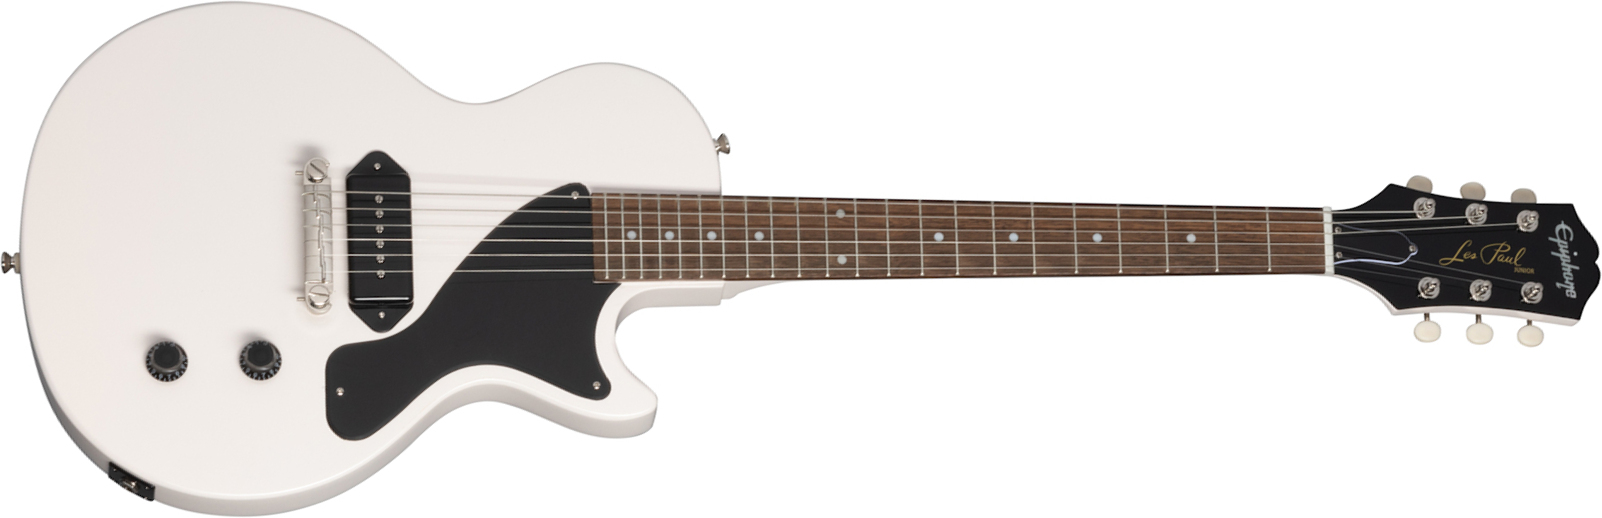 Epiphone Billie Joe Armstrong Les Paul Junior Signature S P90 Ht Lau - Classic White - Guitare Électrique Single Cut - Main picture